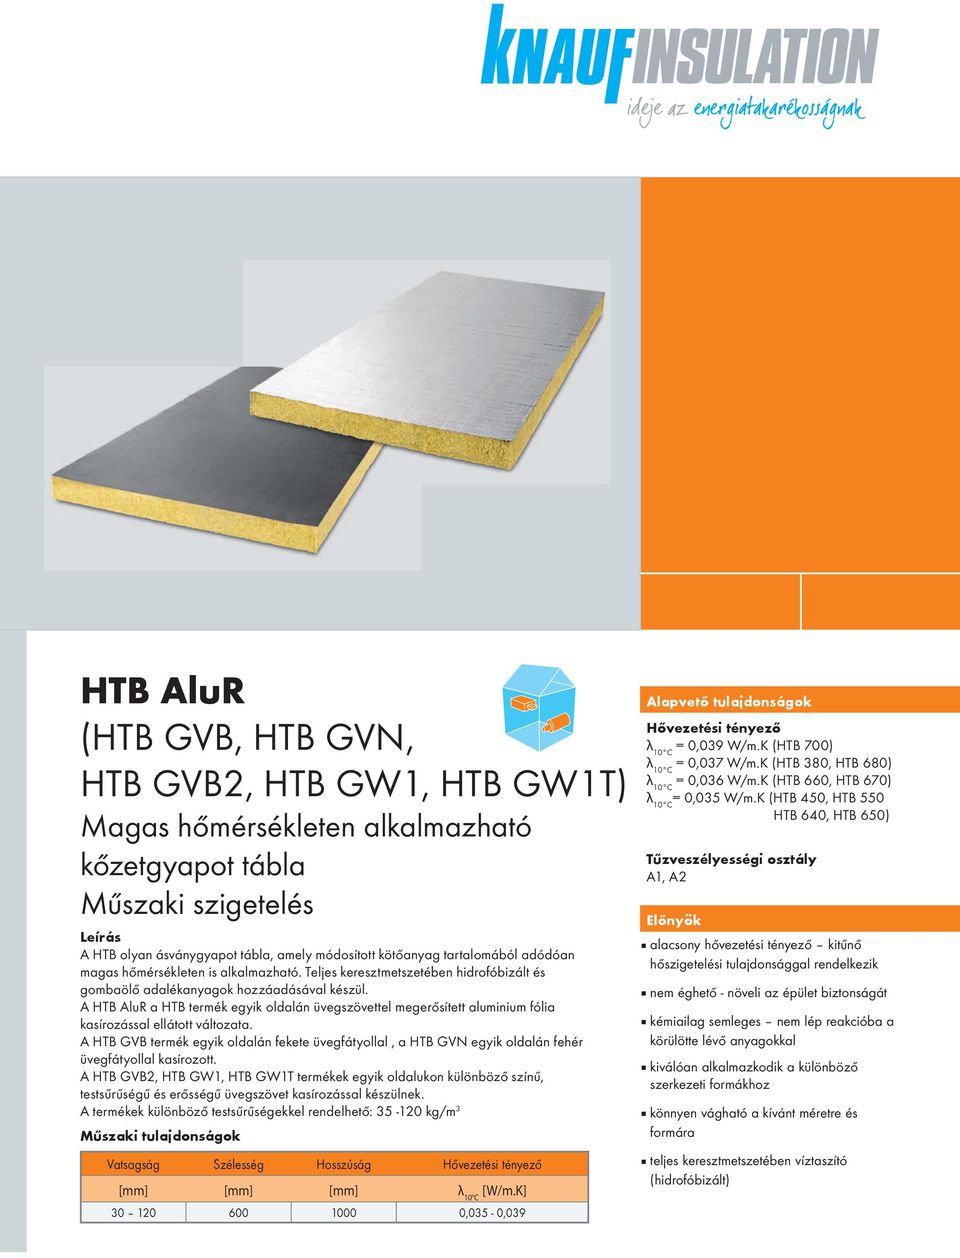 A HTB AluR a HTB termék egyik oldalán üvegszövettel megerősített aluminium fólia kasírozással ellátott változata.